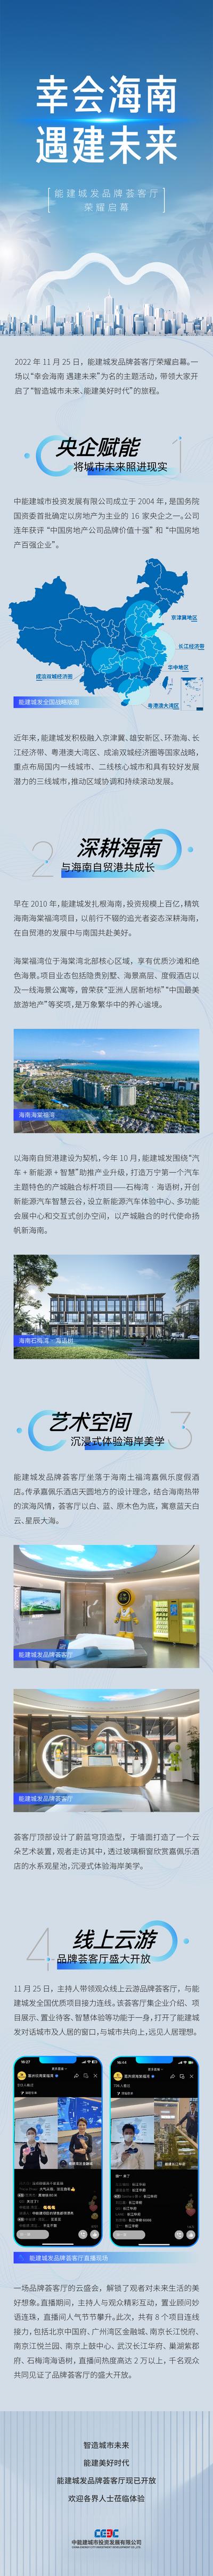 【南门网】海报 长图 房地产 价值点 海南 科技 发布会 品牌 地图